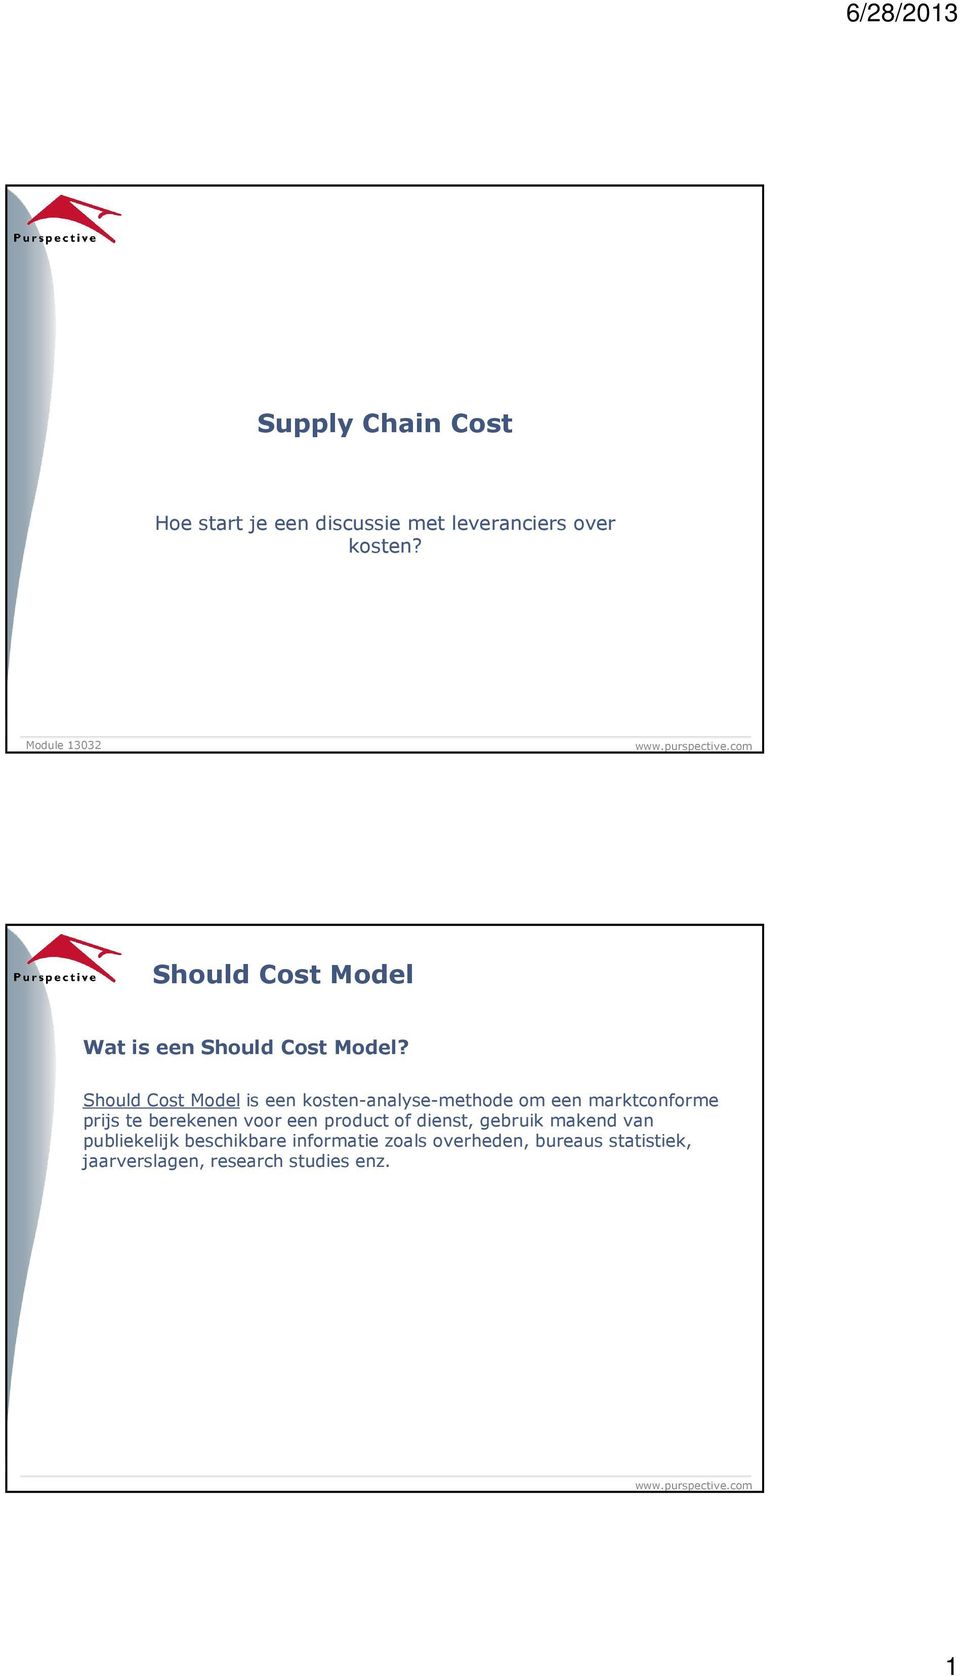 Should Cost Model is een kosten-analyse-methode om een marktconforme prijs te berekenen voor